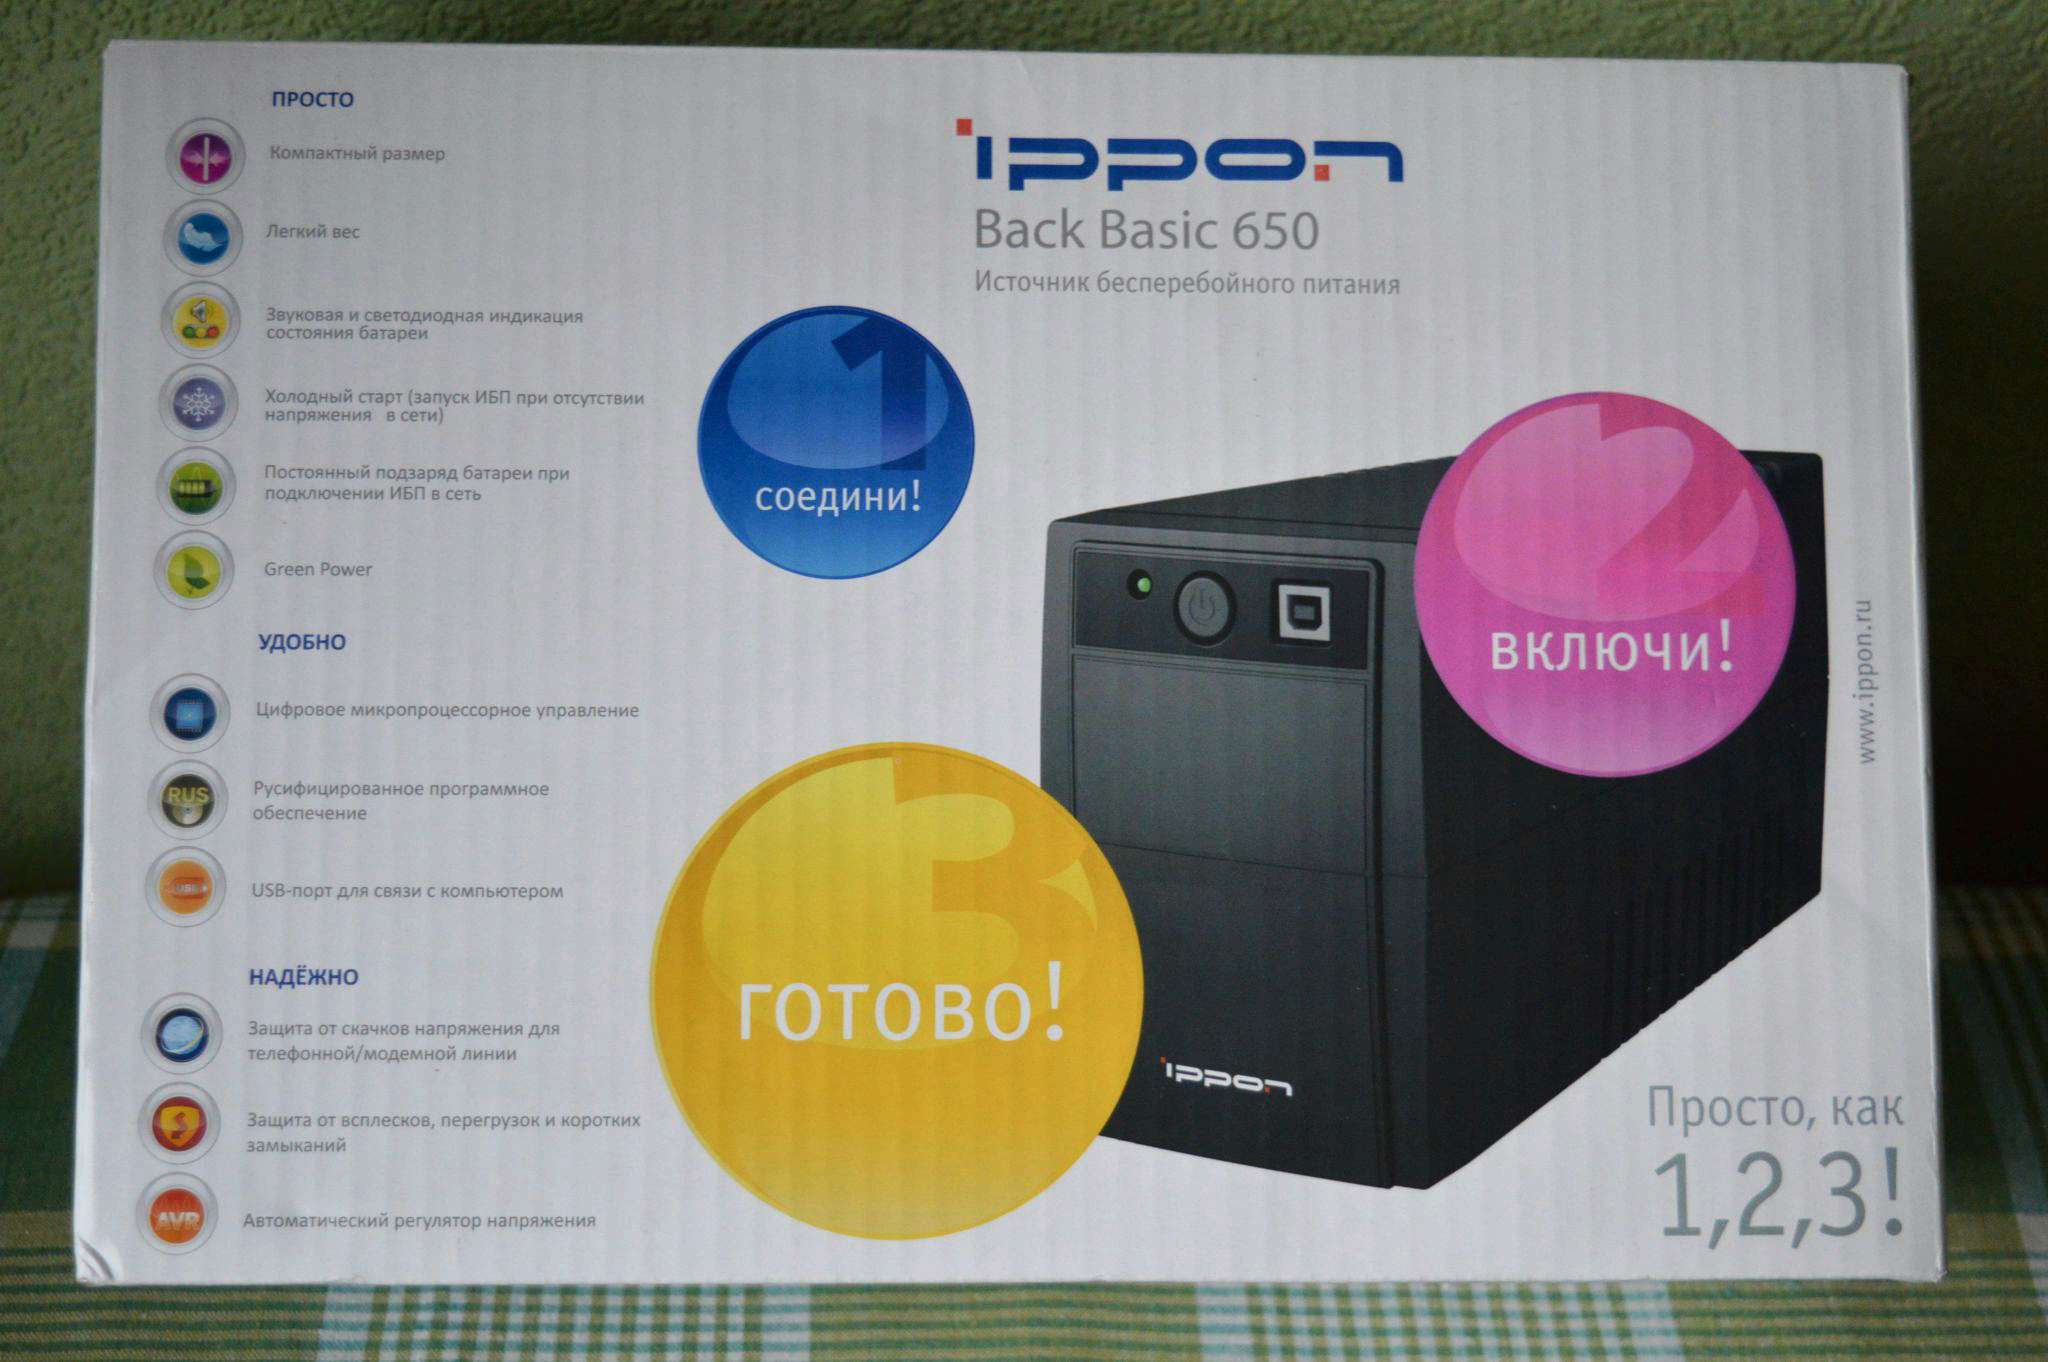 Back basic 850 euro. ИБП Ippon back Basic 850. ИБП Ippon 650. Ippon back Basic 650. Источник бесперебойного питания back Basic 650.